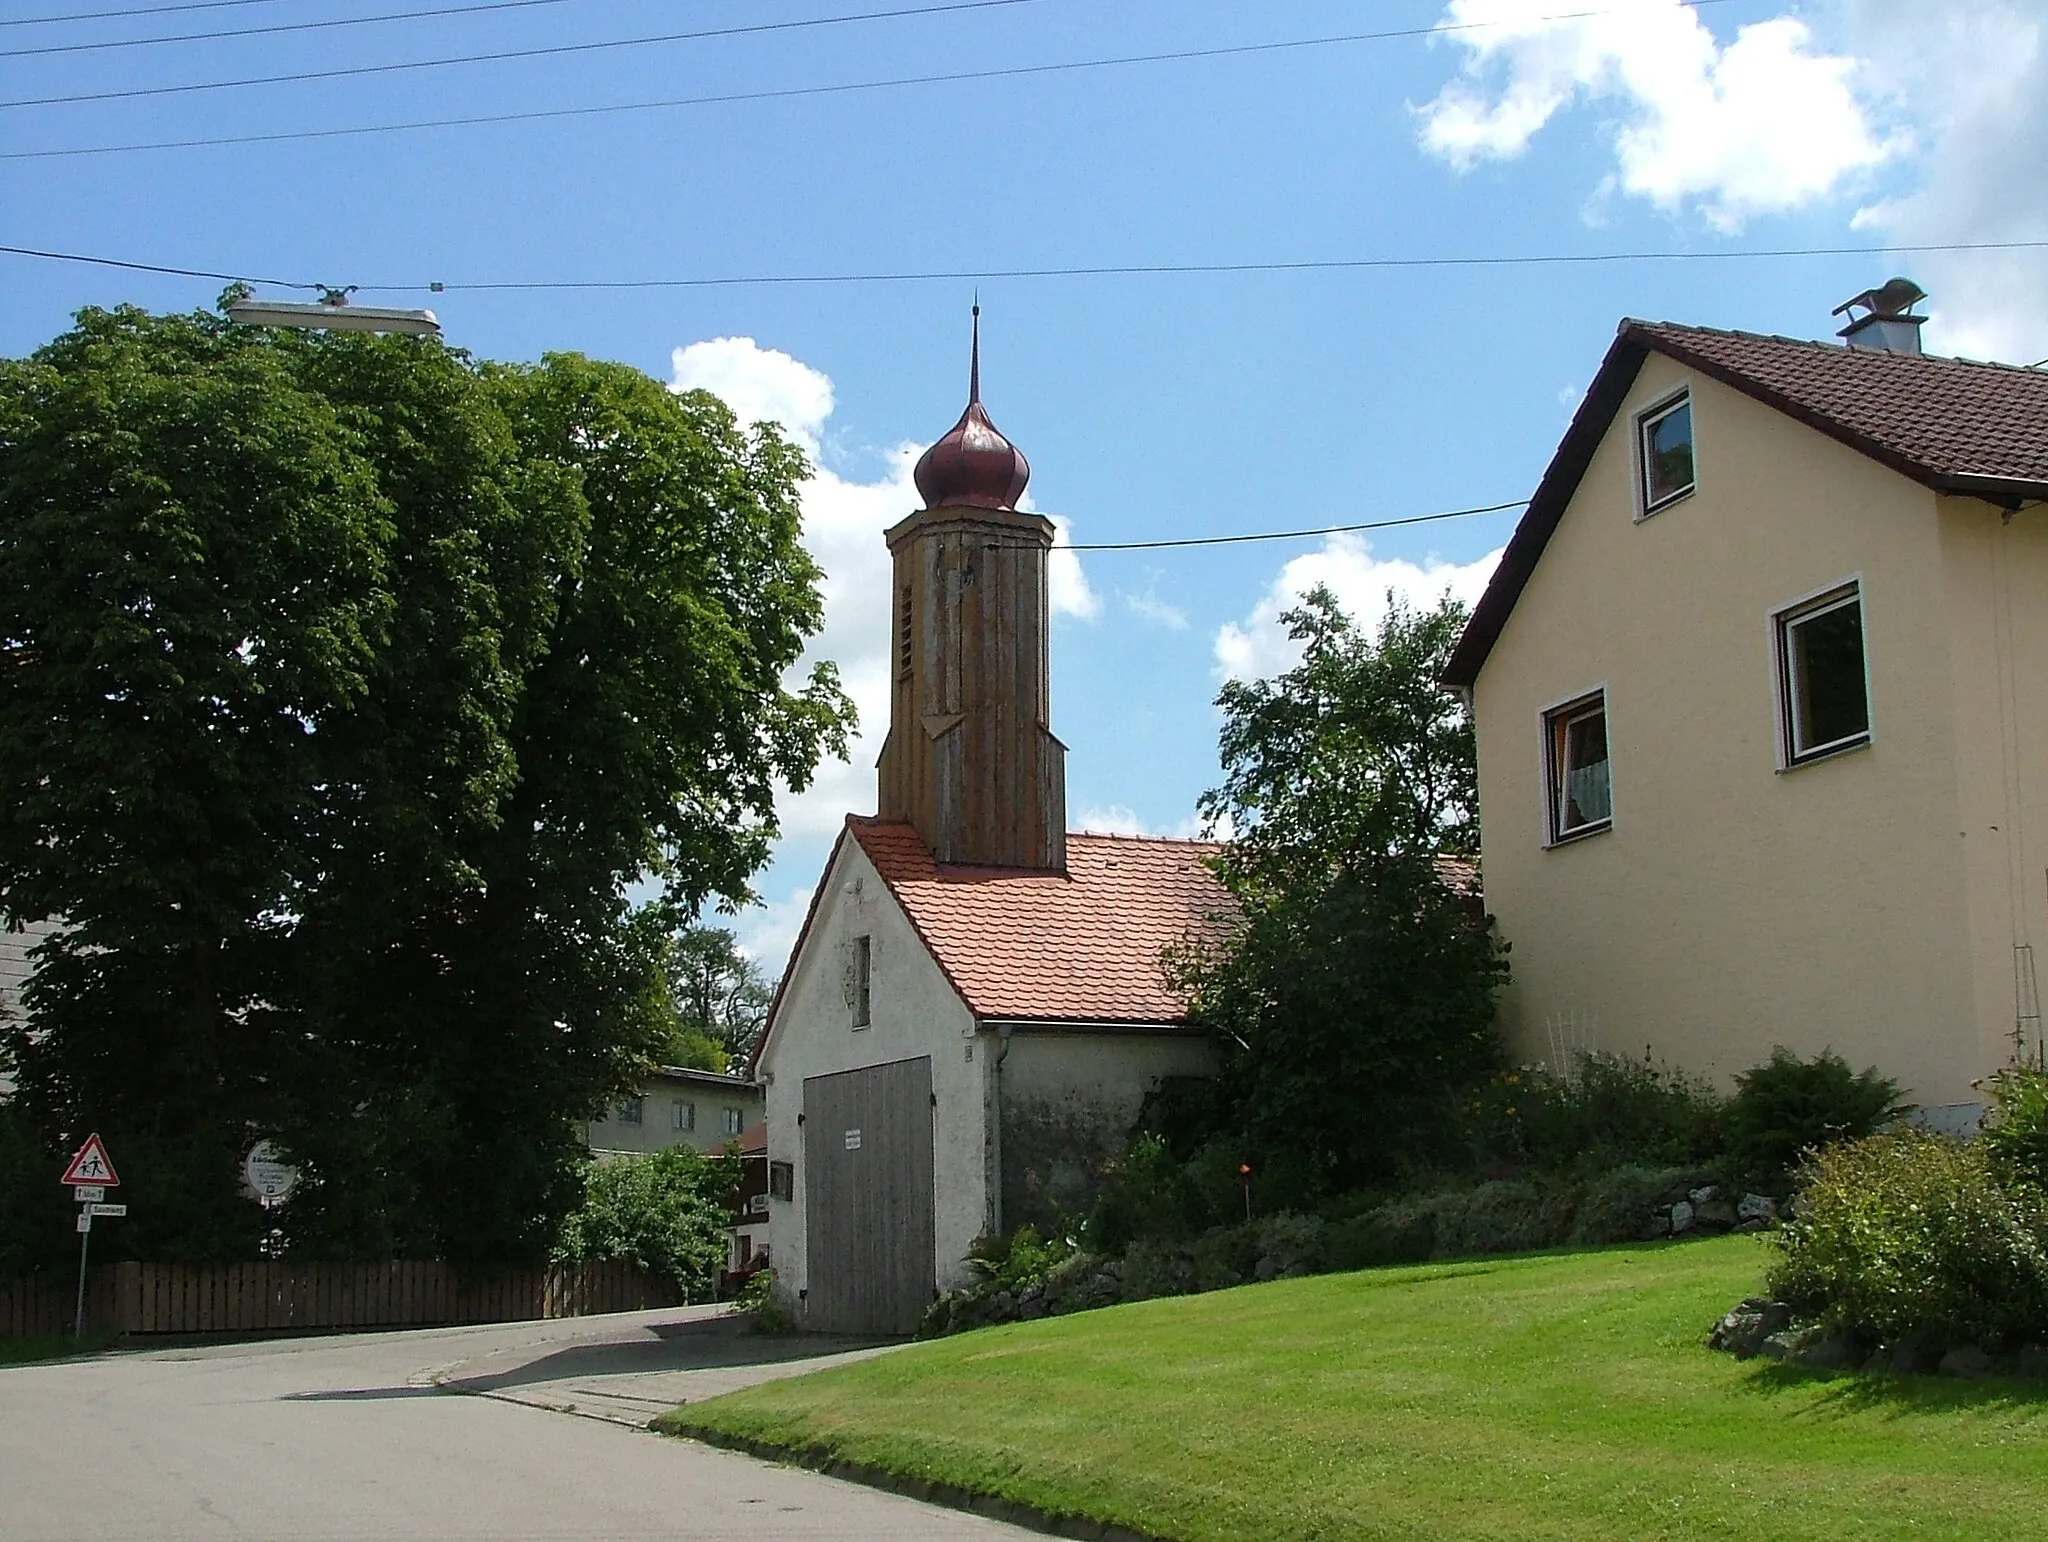 Photo showing: Feuerwehrhaus